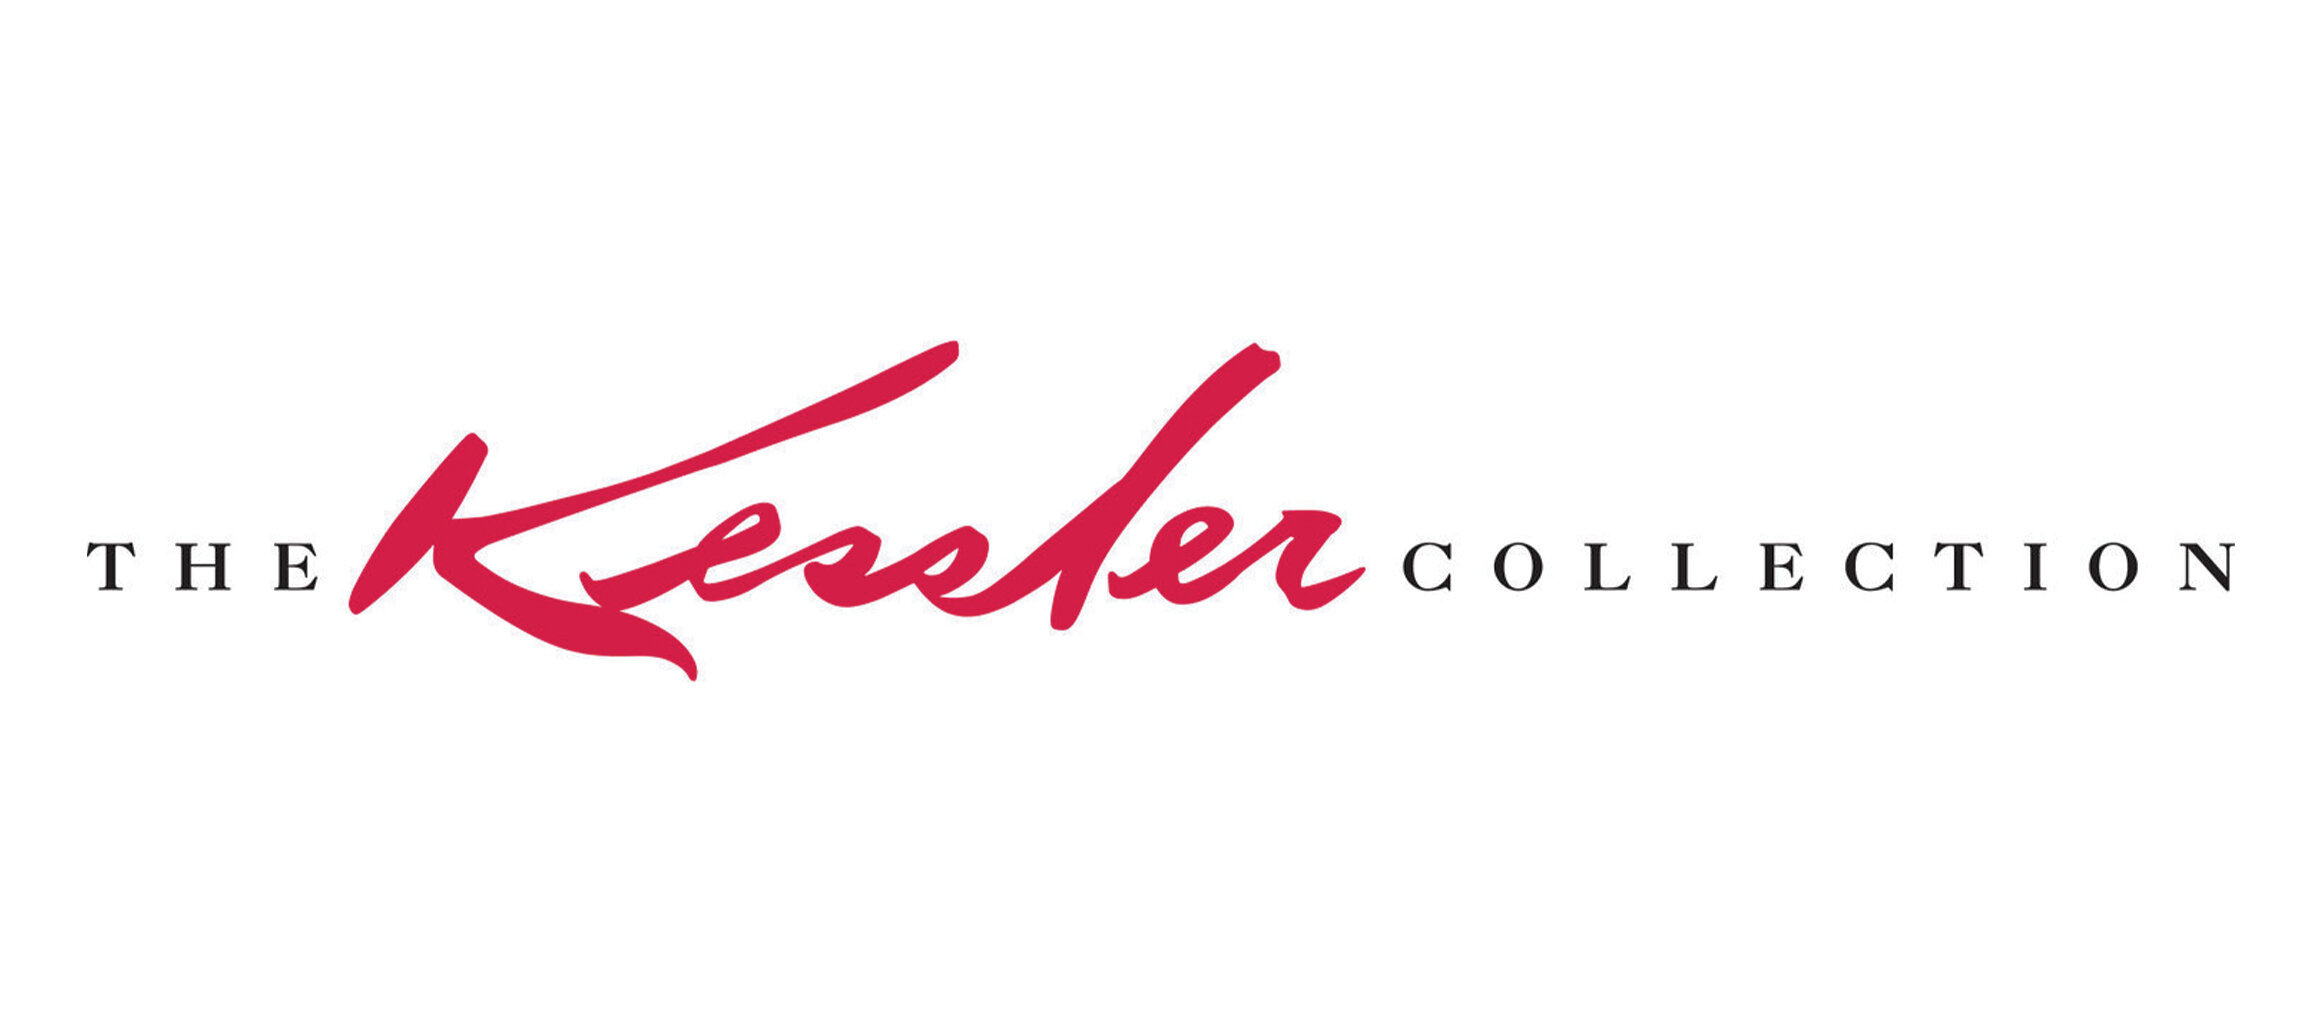 0_Kessler Collection_logo.jpg